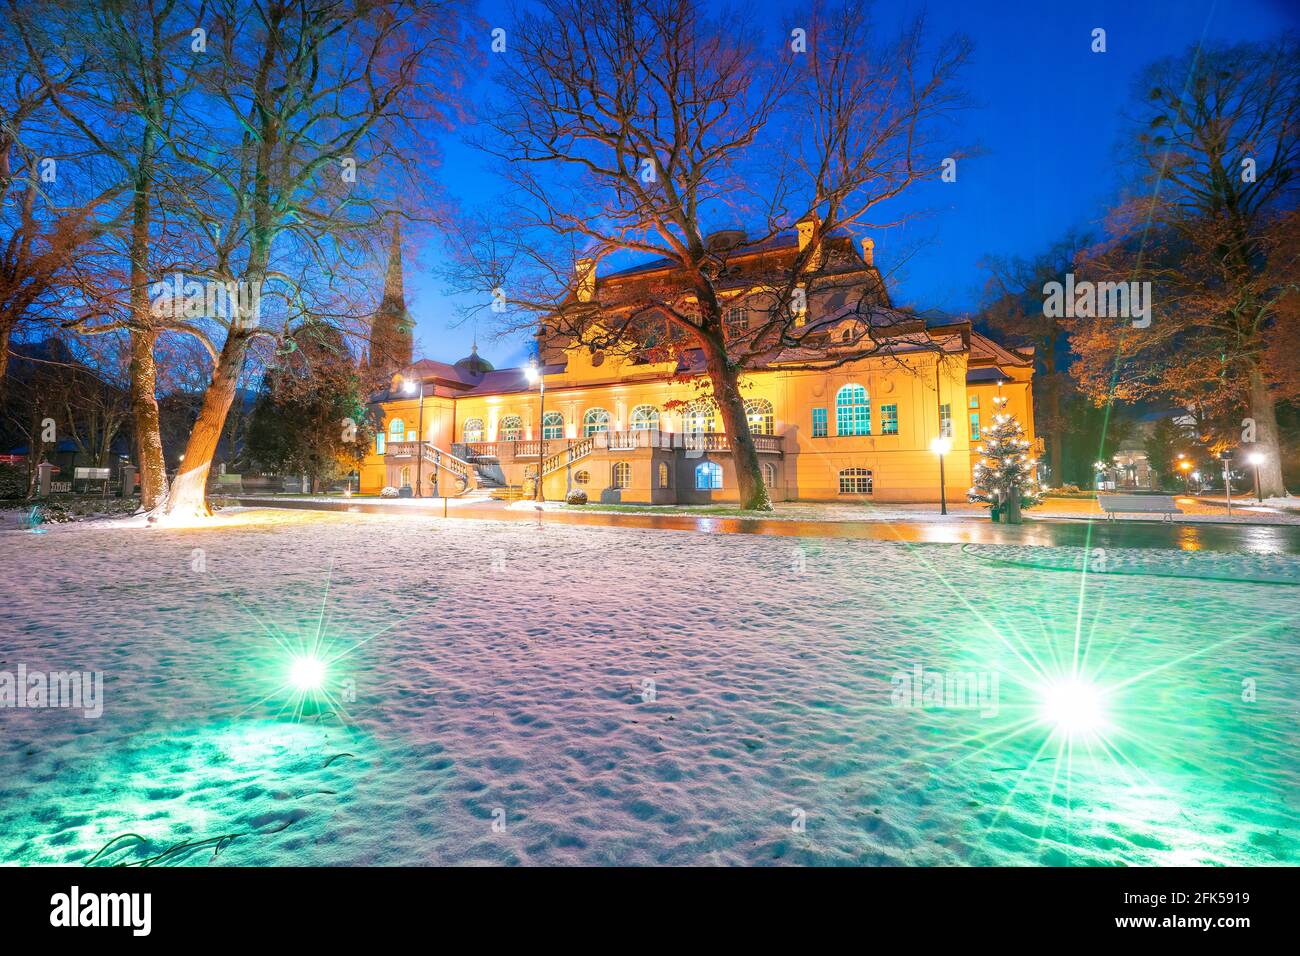 Winter - Weihnacht im abendlich-nächtlich-beleuchteten Kurgarten von Bad Reichenhalldas Alte Kurhaus Foto Stock